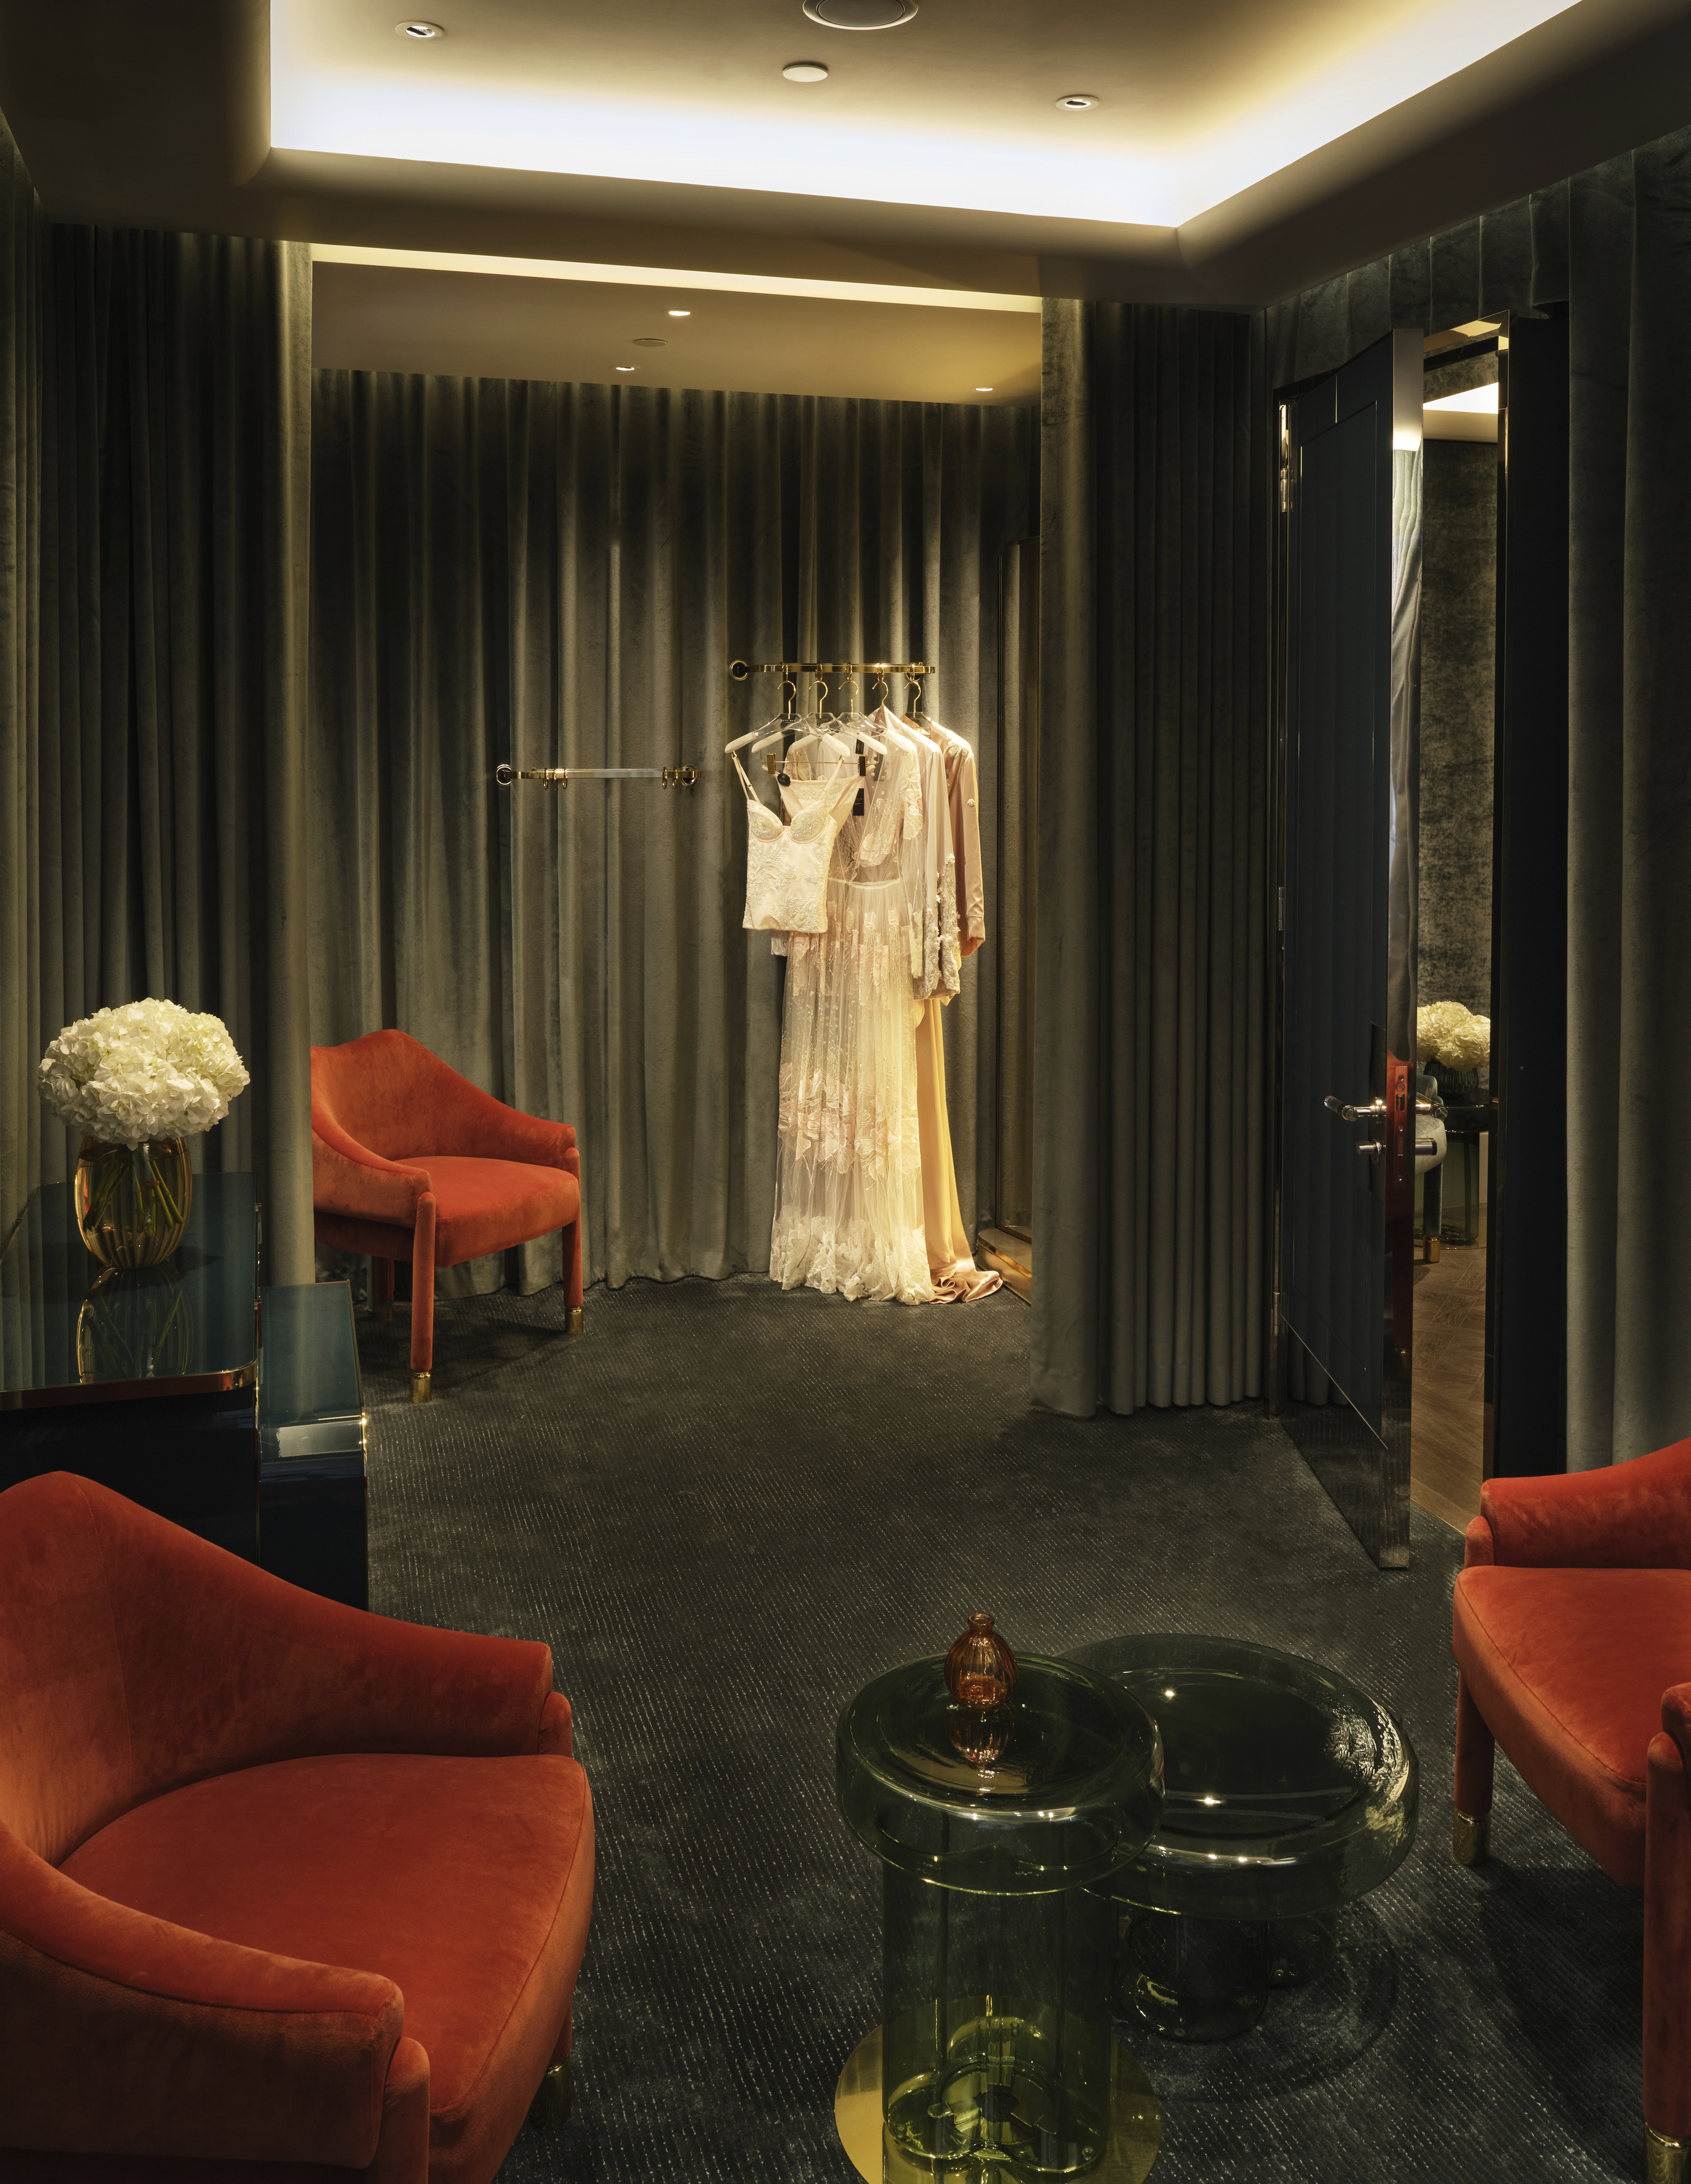 Alexander McQueen store  Hotel interiors, Luxury interior design, Luxury  interior